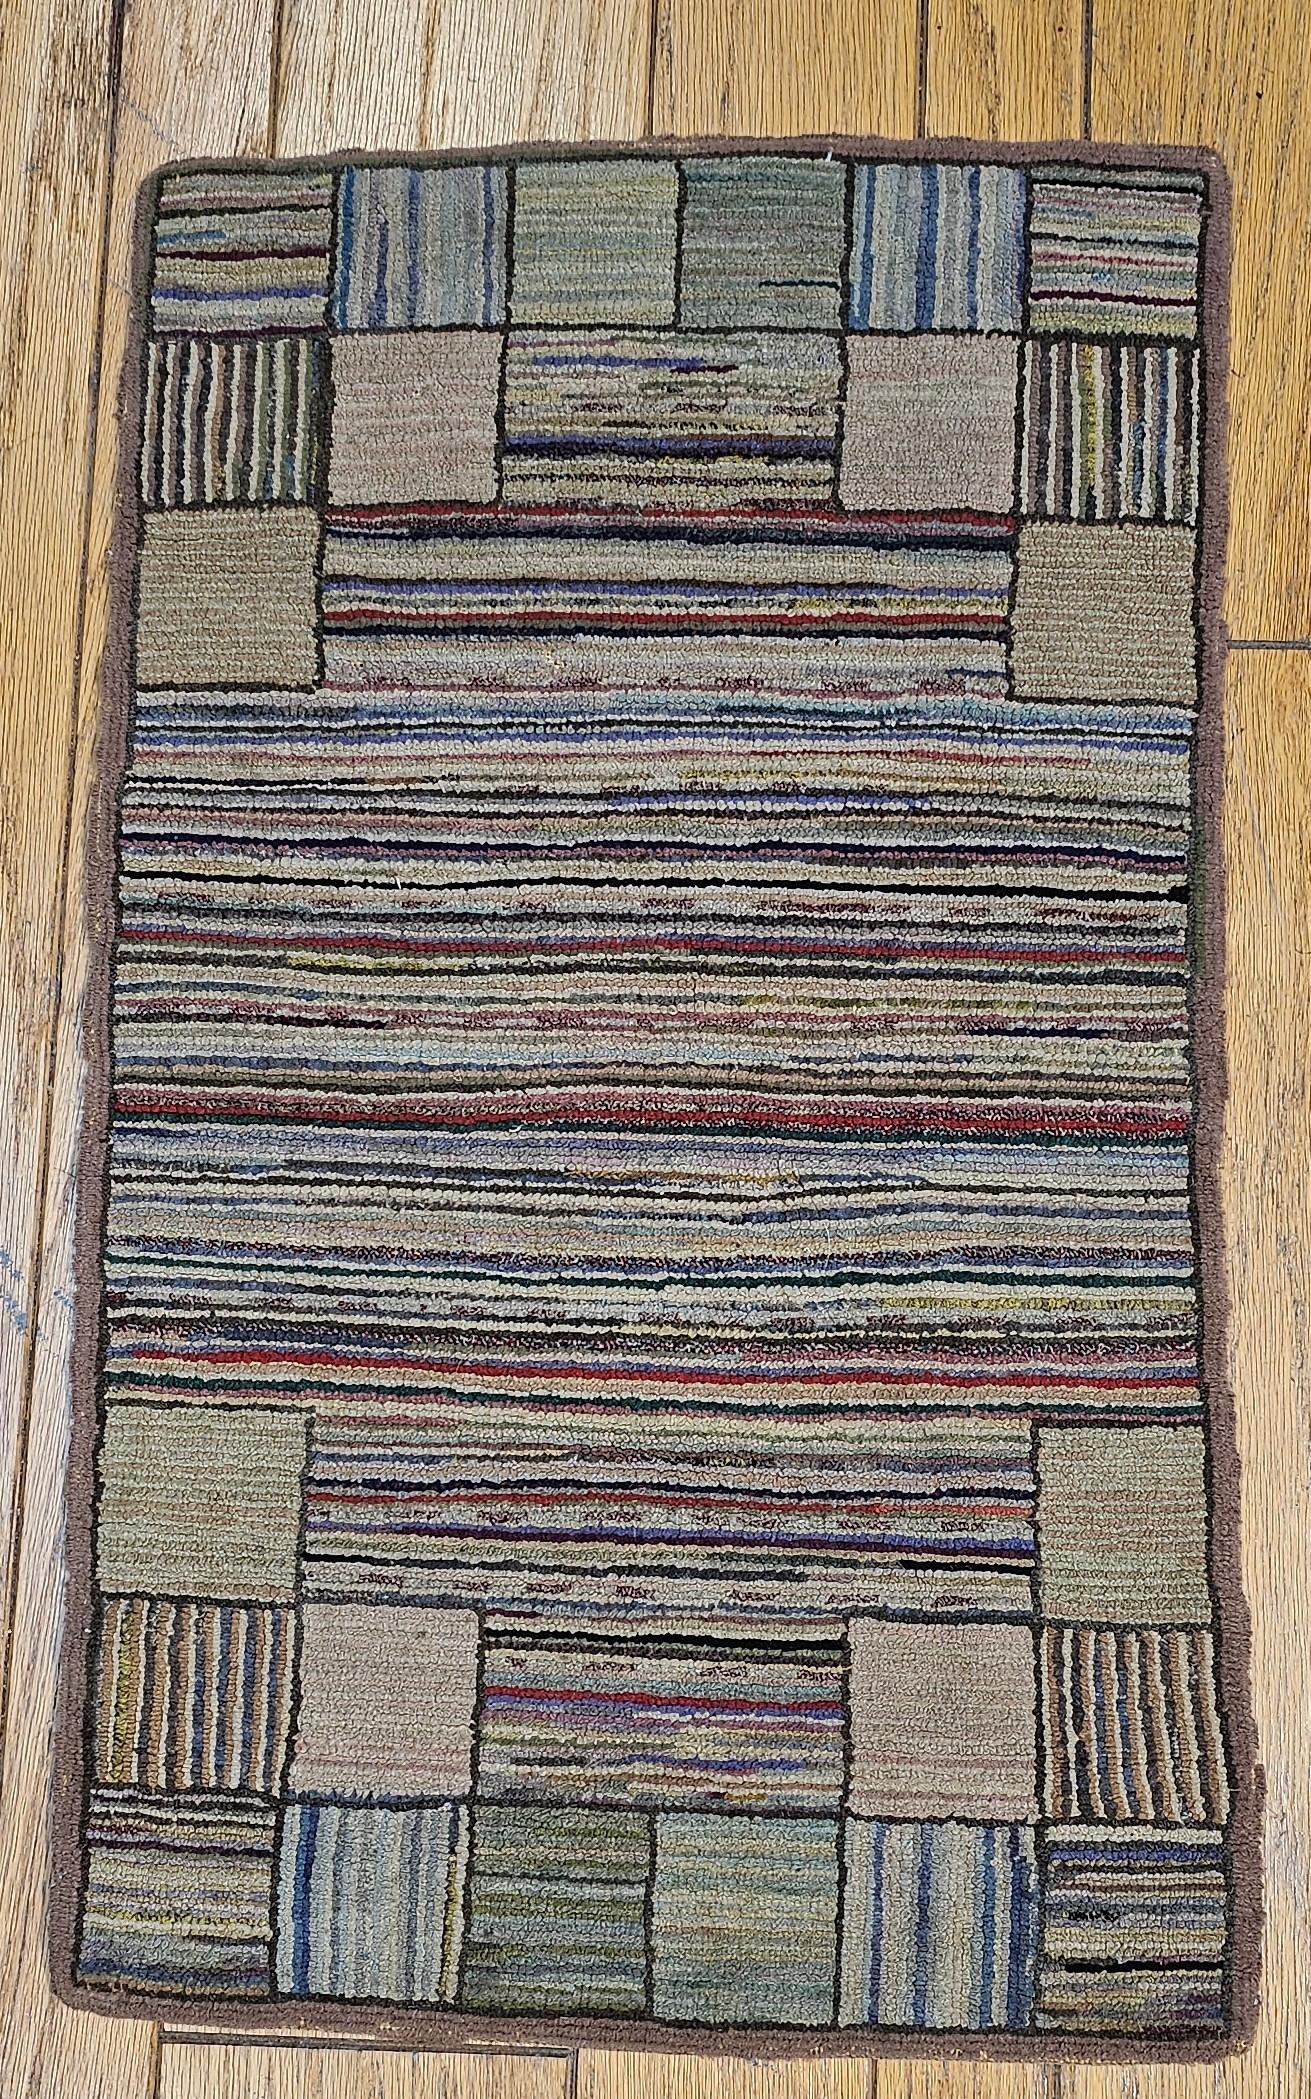 Amerikanischer handgeknüpfter Vintage-Teppich mit Streifenmuster, handgefertigt im 1. Viertel der 1900er Jahre.  Die  Die Hakenteppiche aus dem späten 19. und frühen 20. Jahrhundert werden aus recyceltem altem MATERIAL hergestellt, oft aus